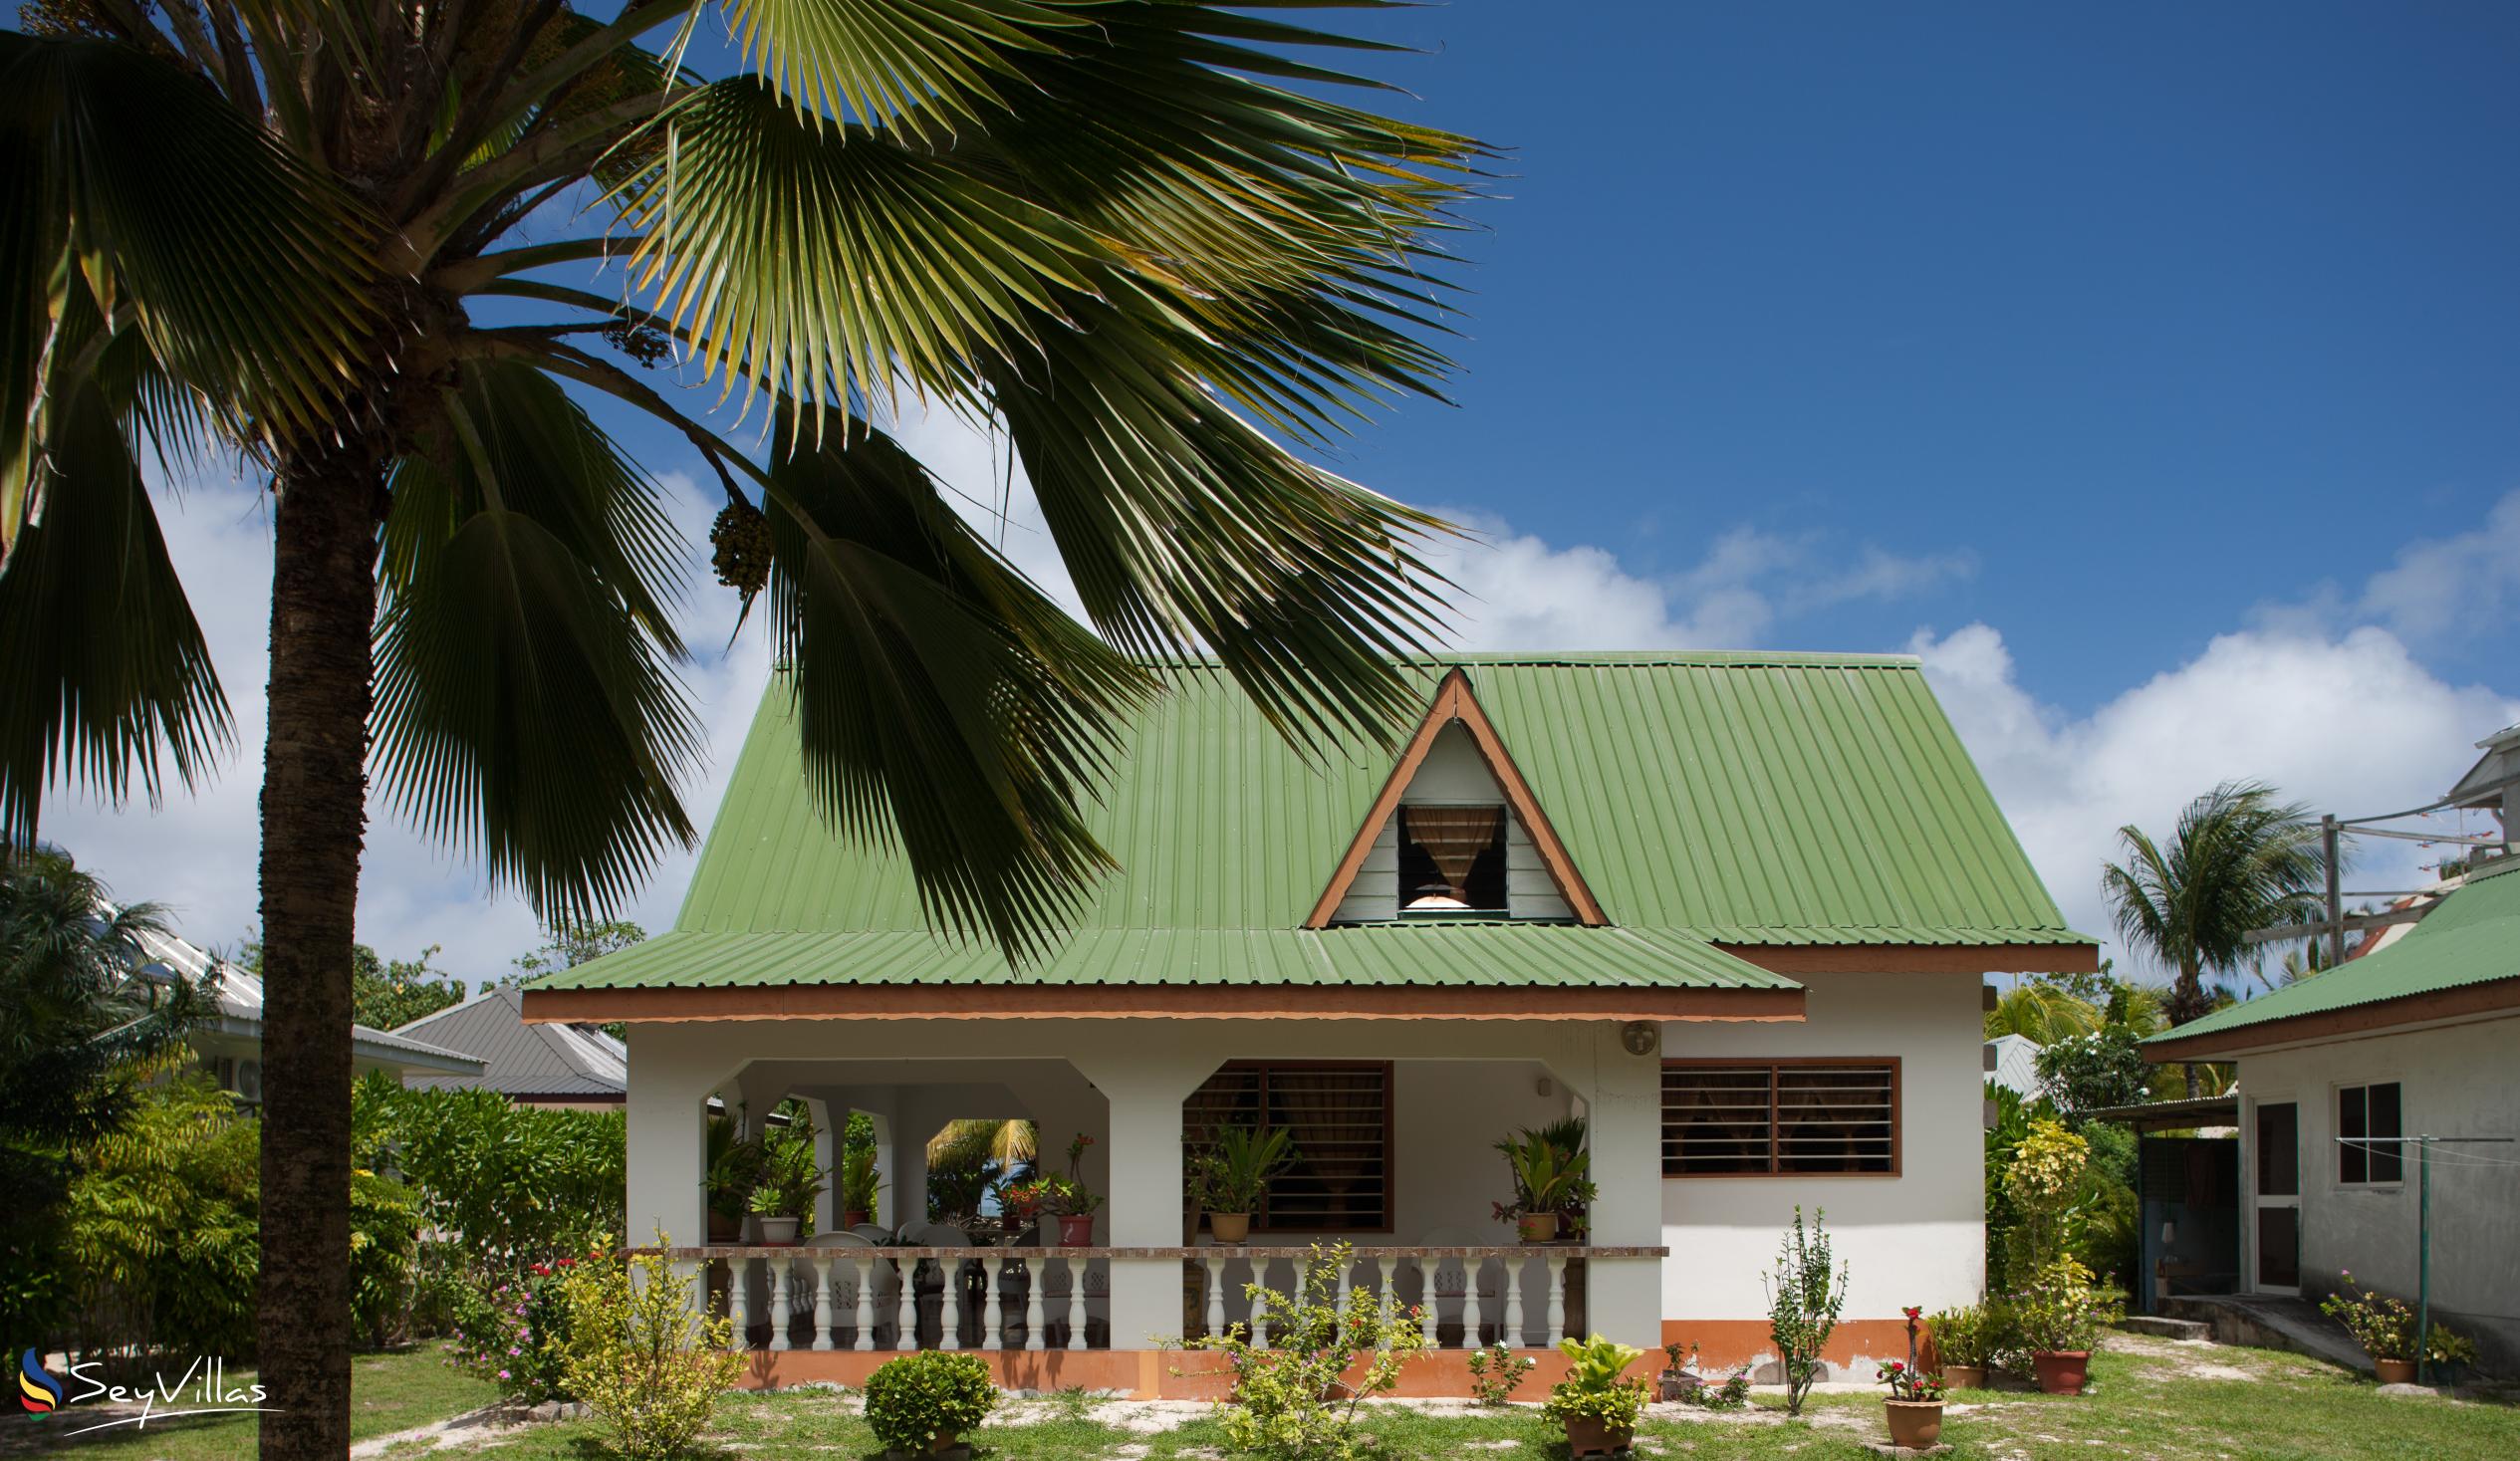 Foto 2: Villa Admiral - Aussenbereich - Praslin (Seychellen)